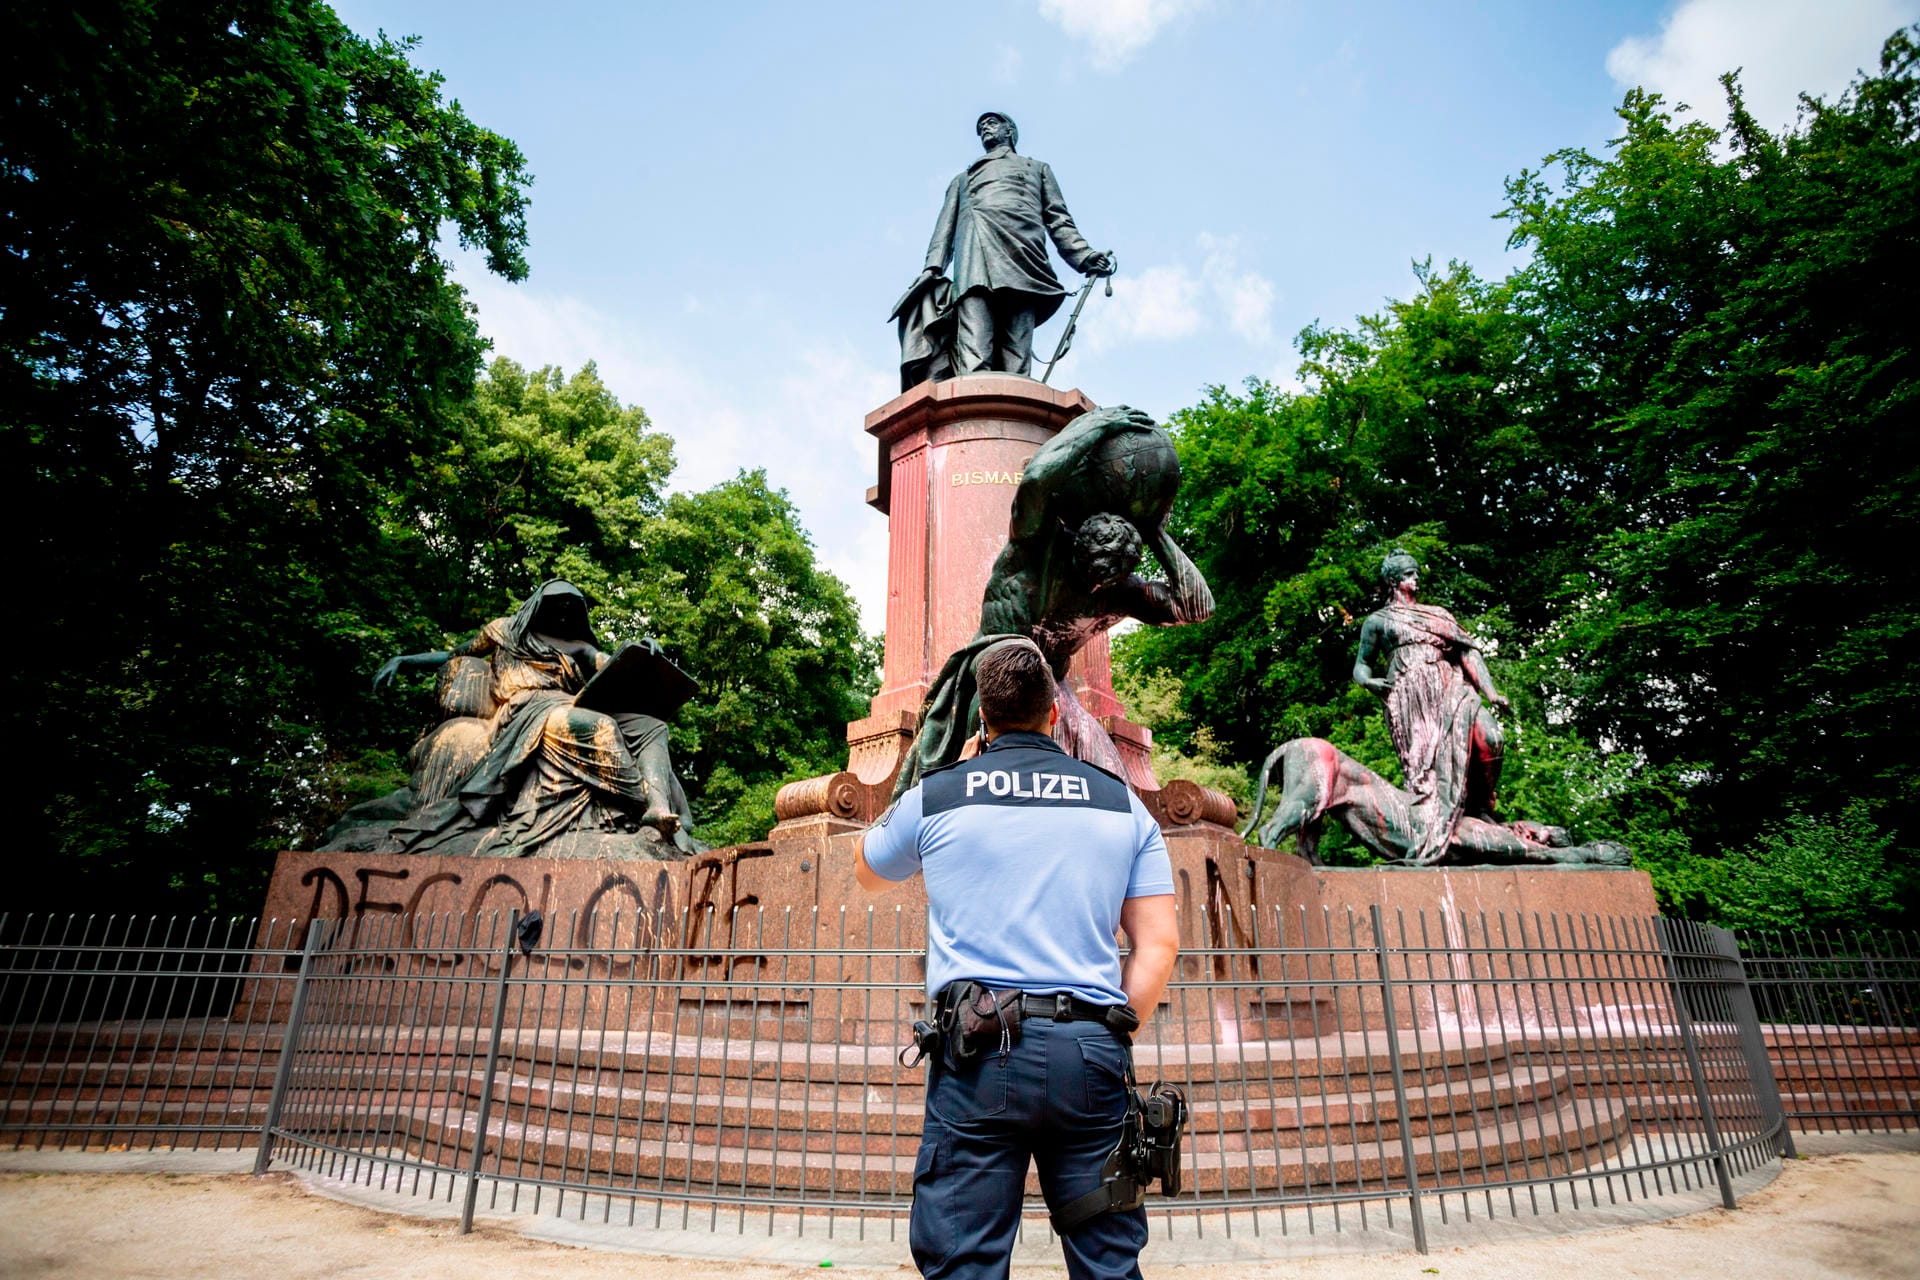 Farbattacke auf Bismarck in Berlin: Ein Polizist steht vor dem beschmierten Nationaldenkmal, auf das ebenfalls der Schriftzug "Decolonize Berlin" aufgesprüht wurde. Die Rolle Bismarcks in der Kolonialzeit ist umstritten.